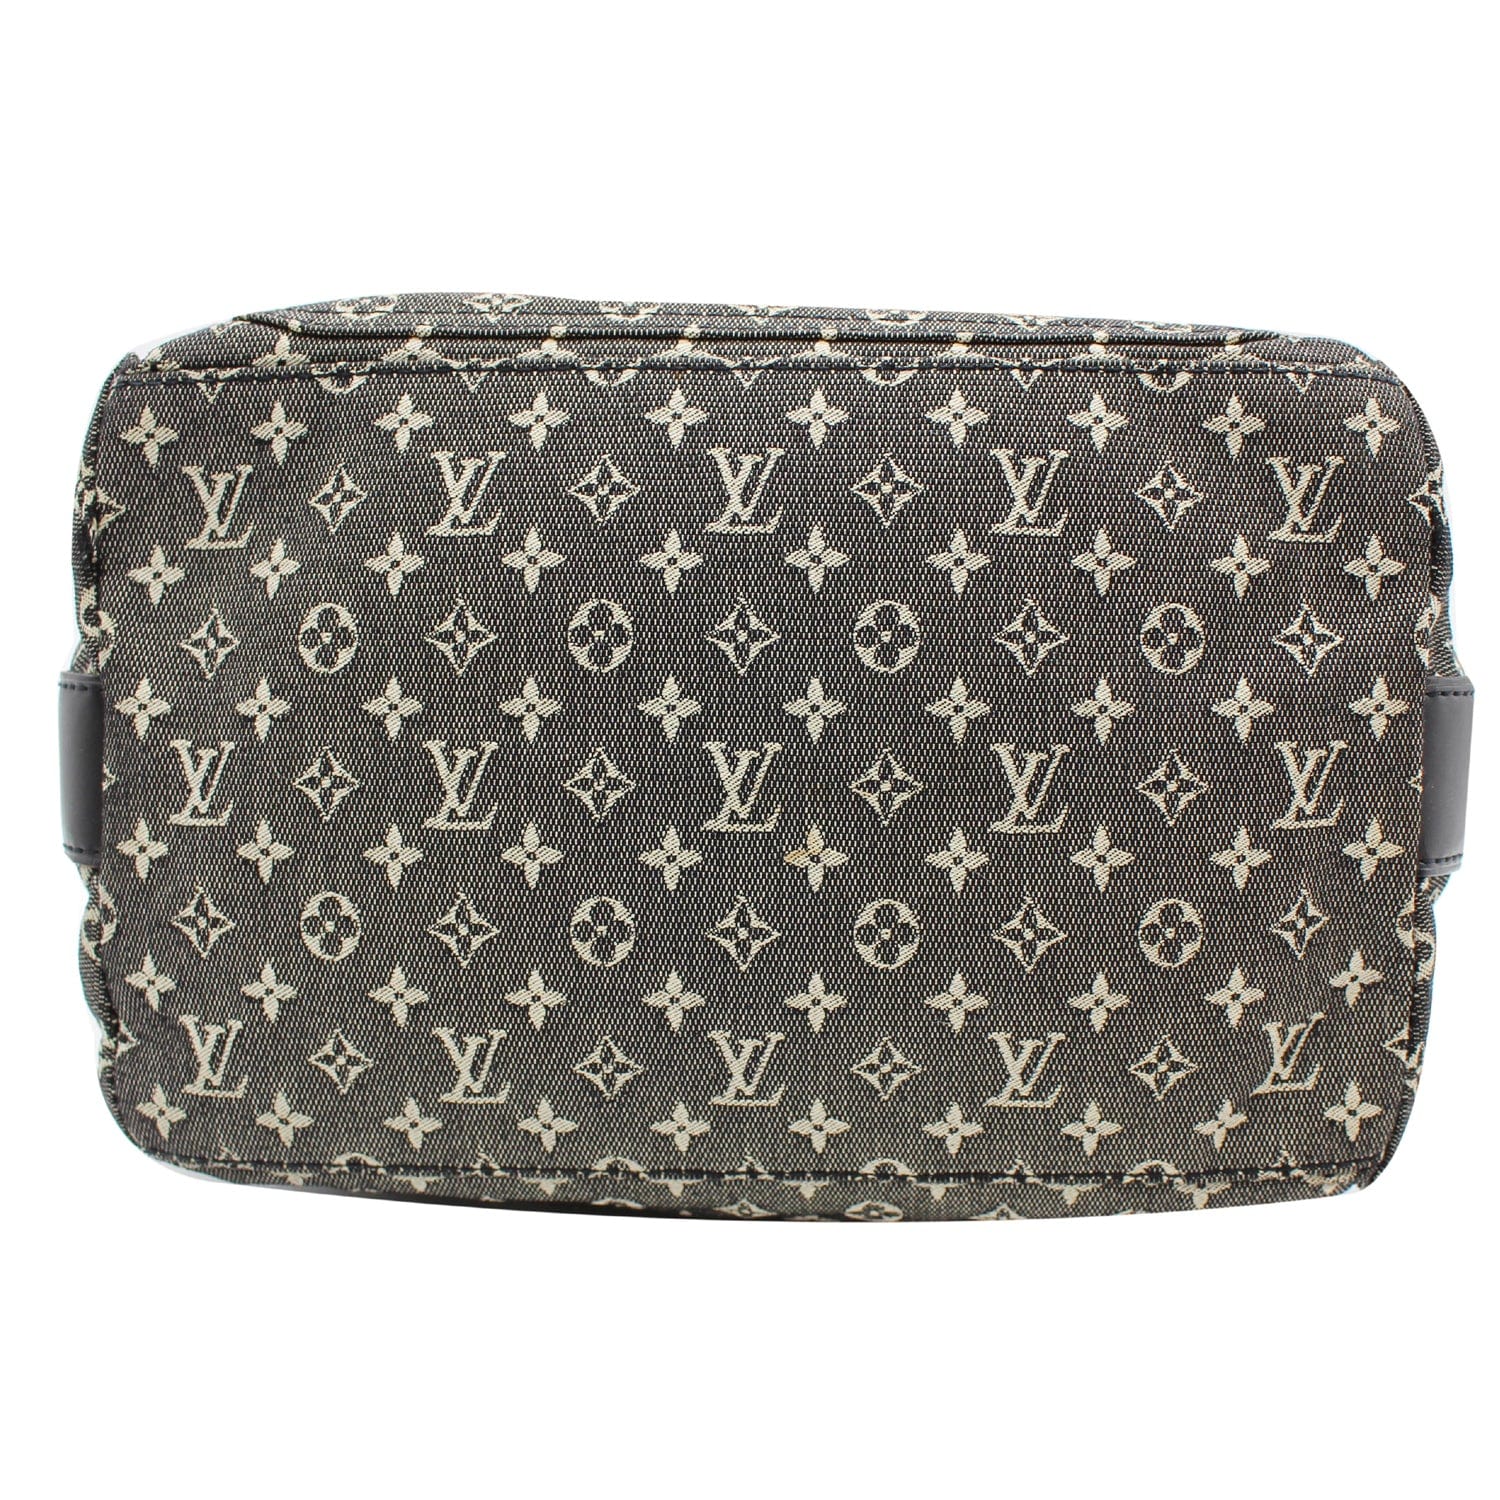 Cloth mini bag Louis Vuitton Black in Cloth - 24519076